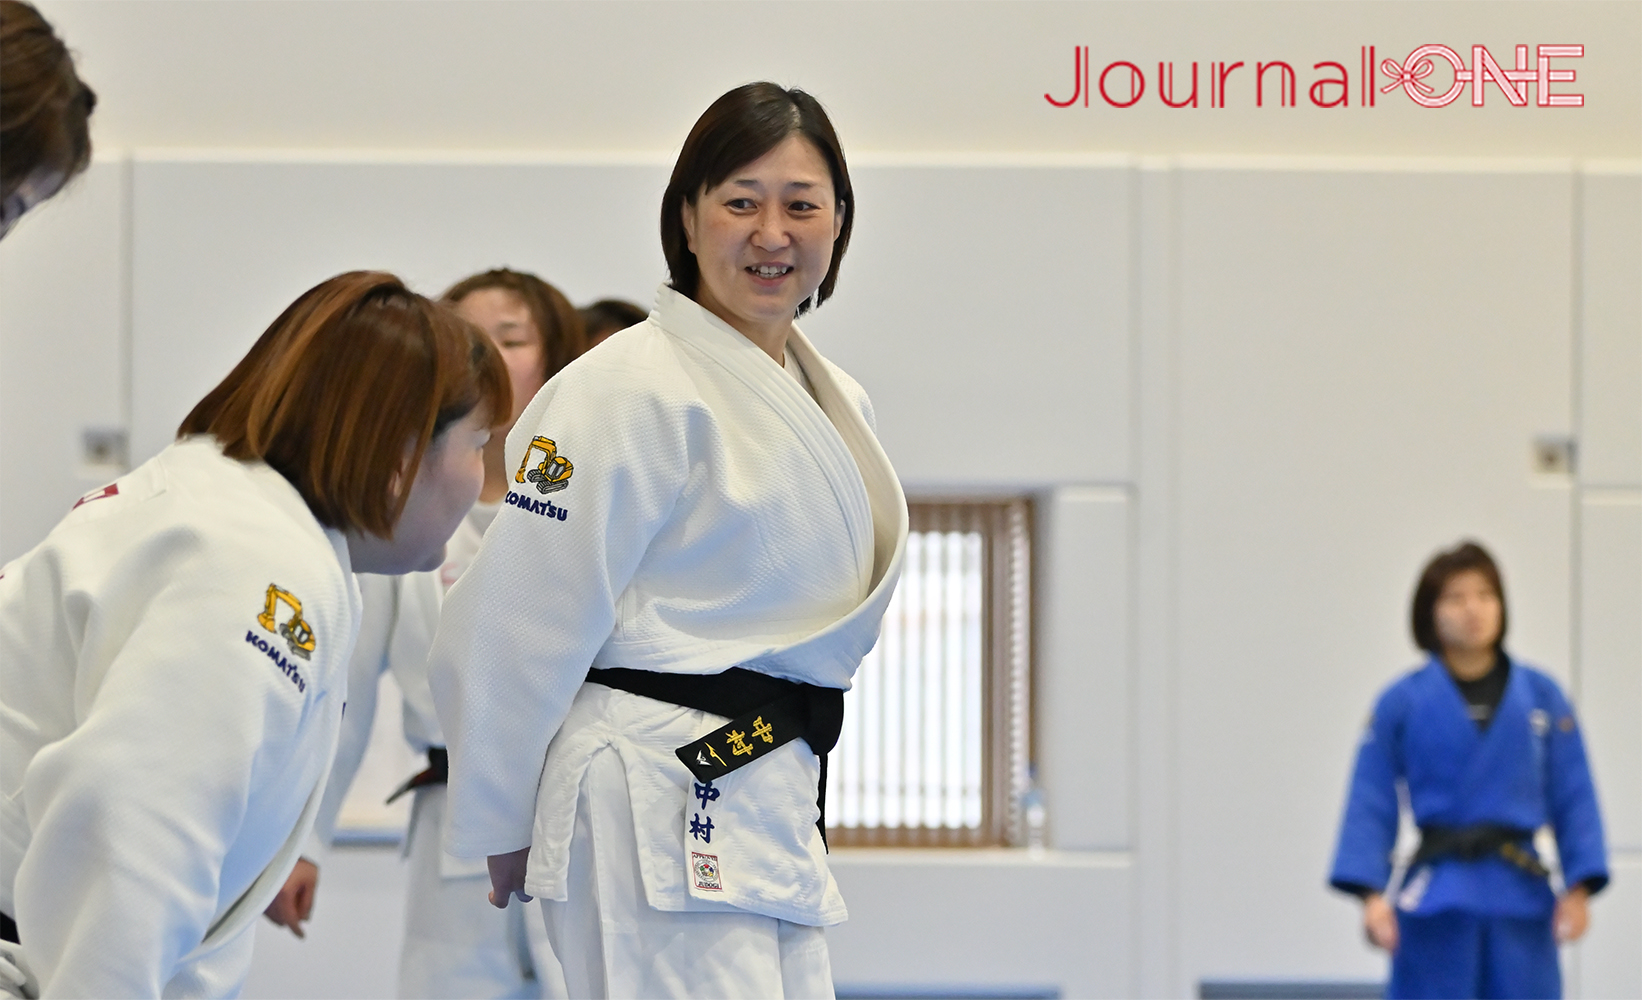 Journal-ONE | The Advisor of Komatsu Judo Team  Atsuko Nakamura has 6th dan